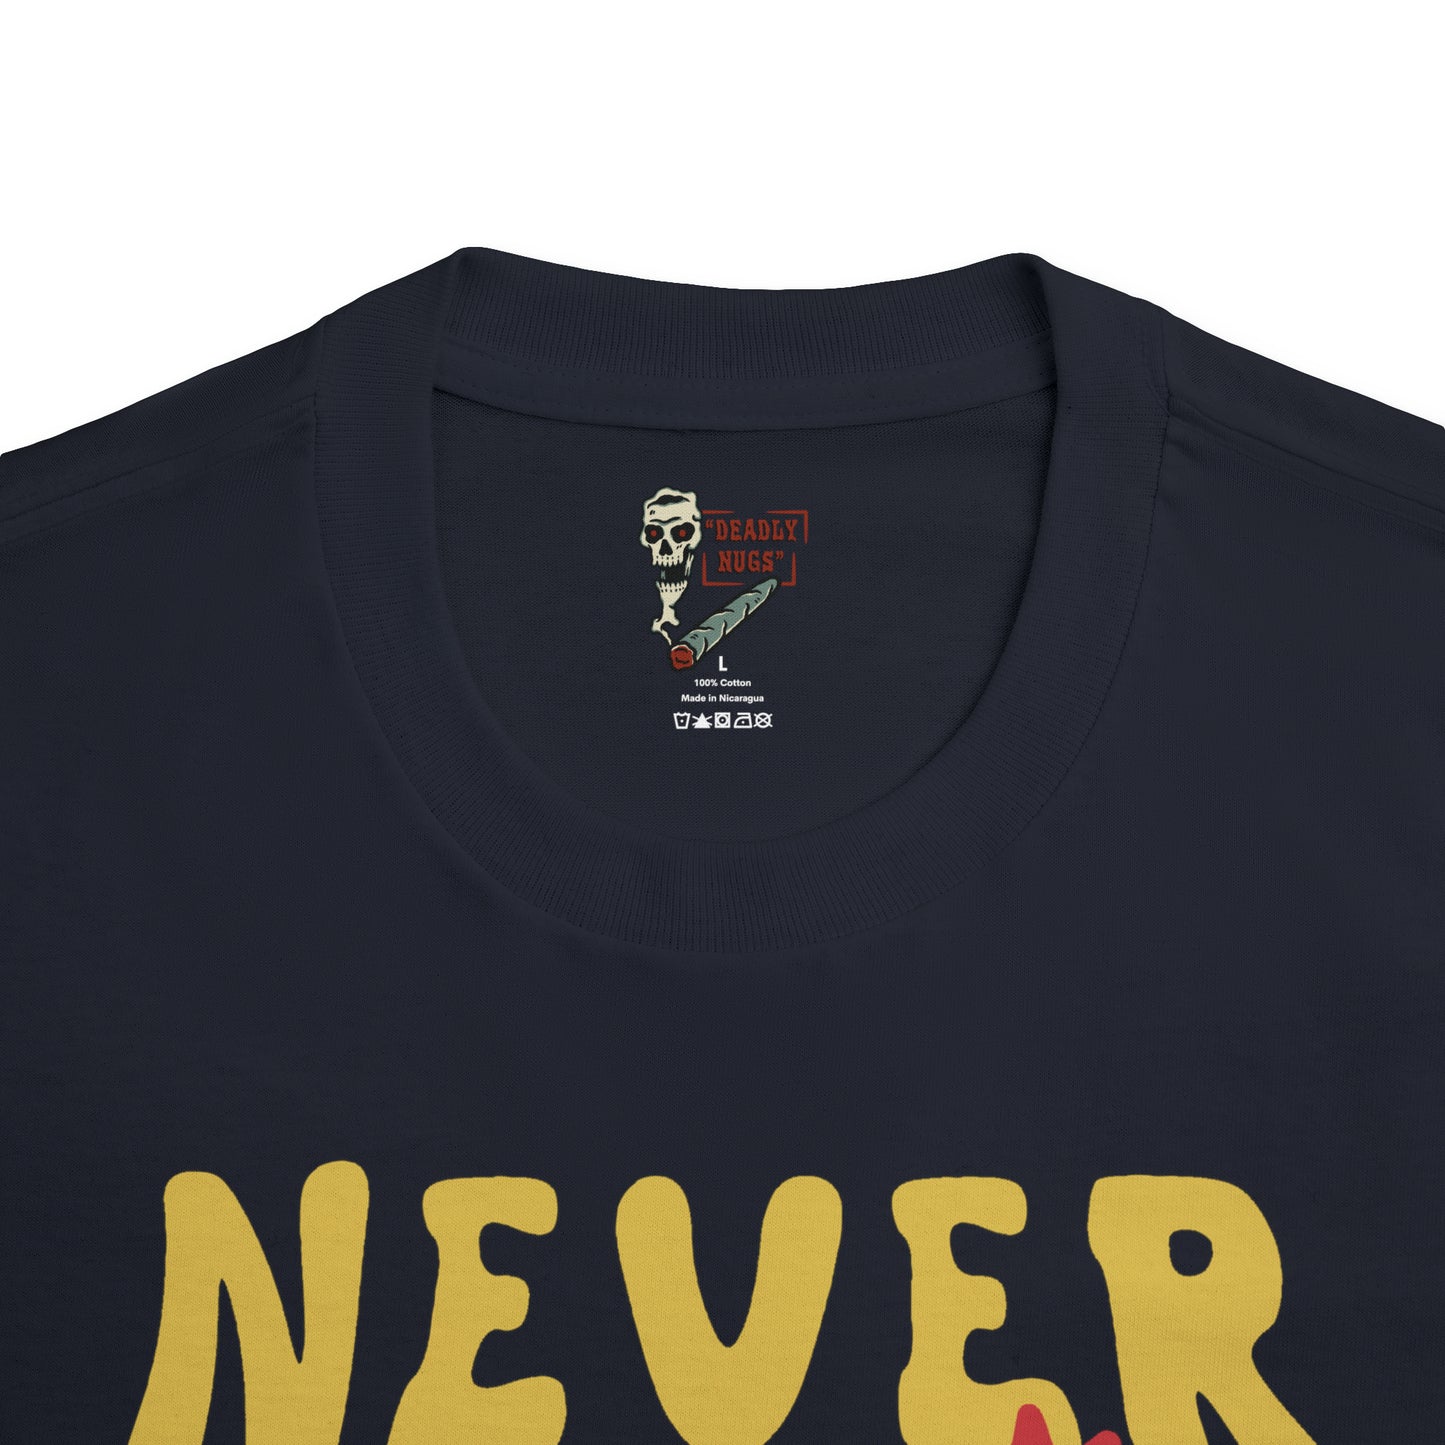 Never Better T-Shirt